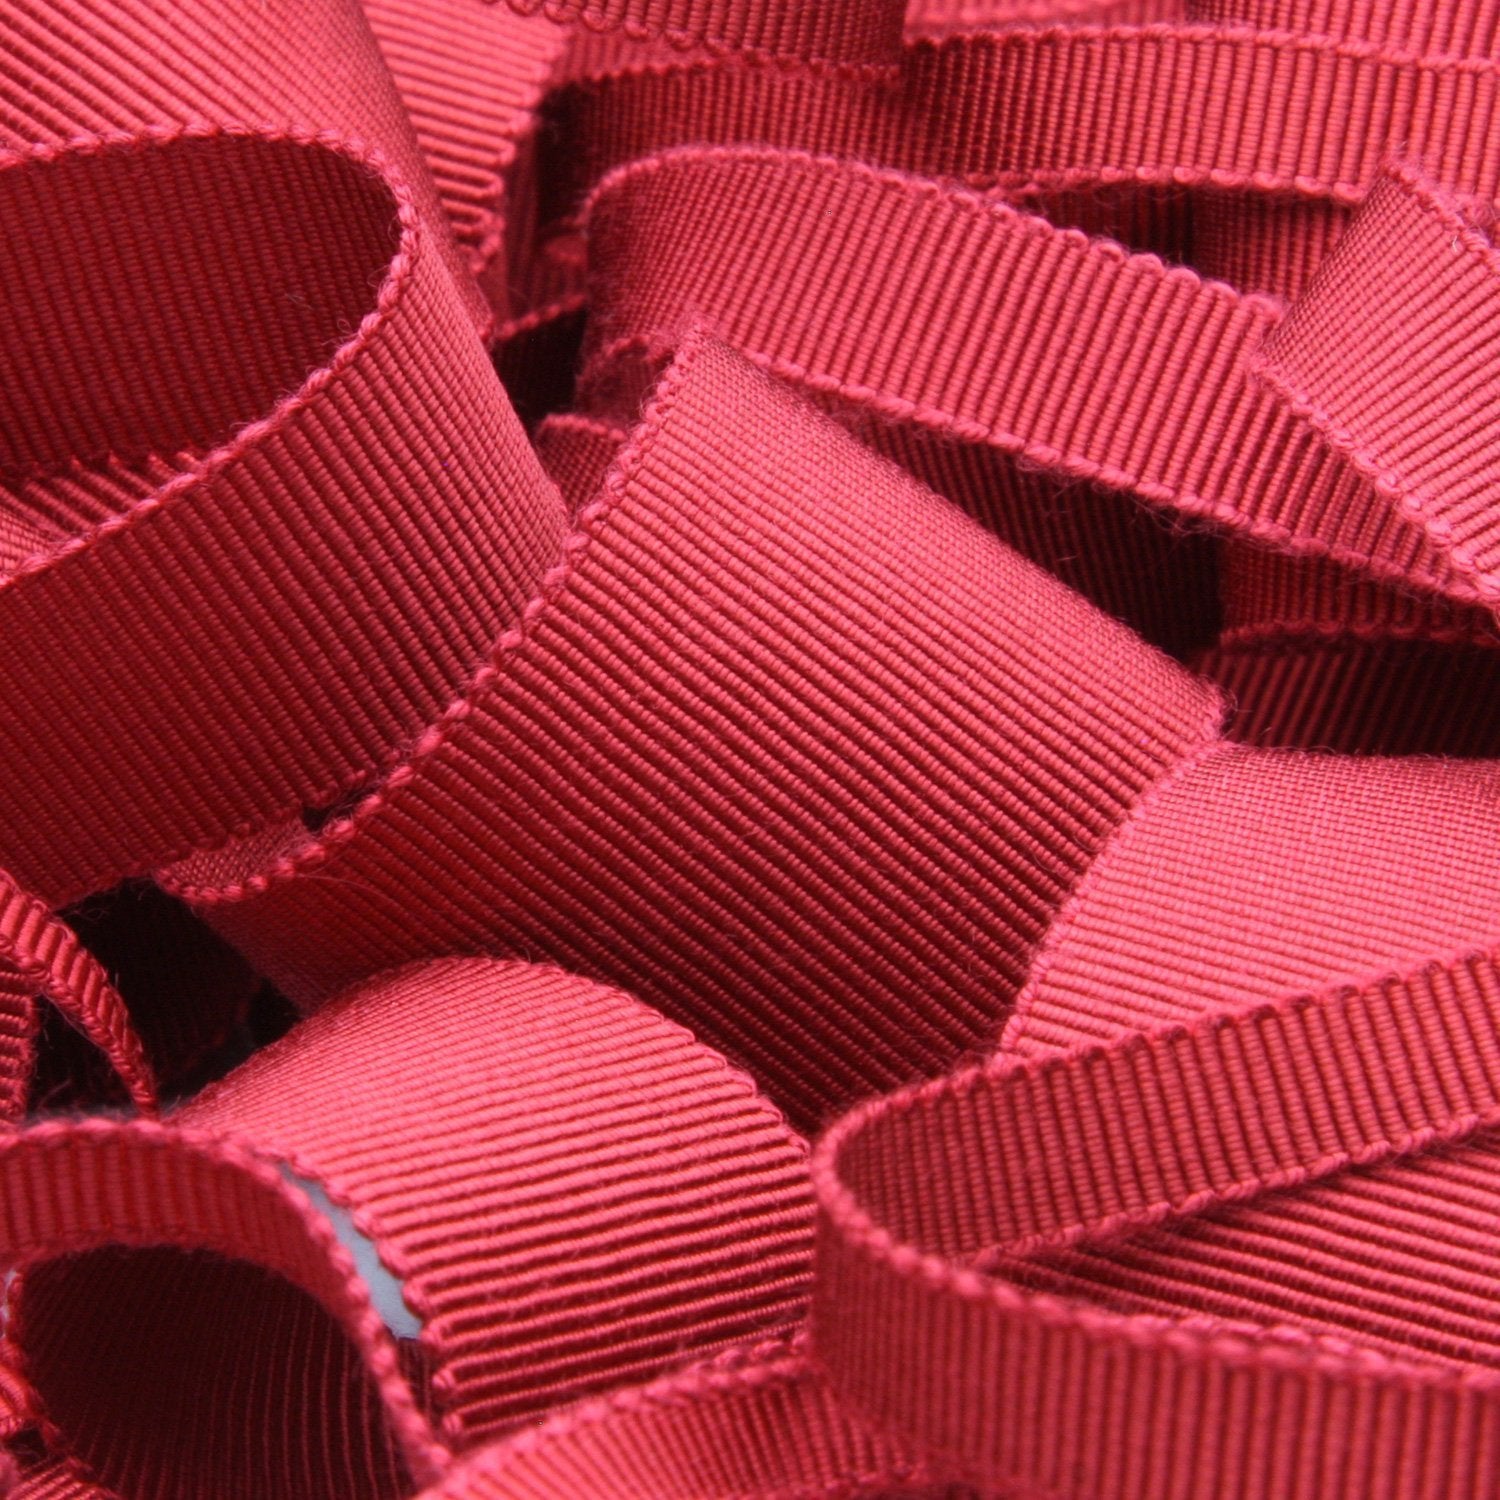 Satin Ribbon, W: 10 mm, Red, 100 M, 1 Roll